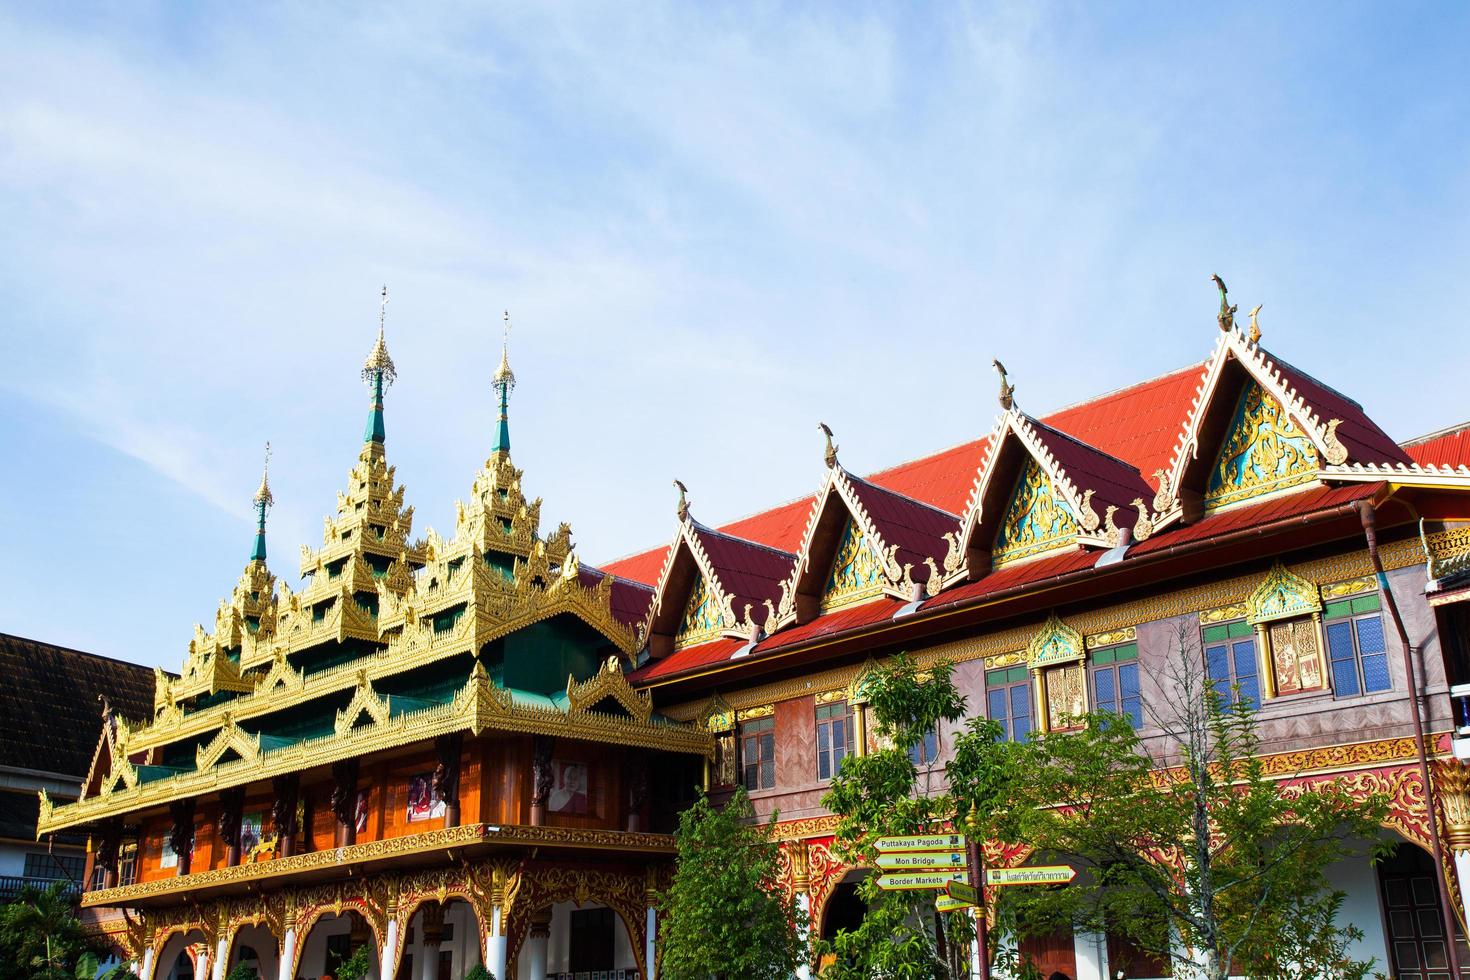 tempio in thailandia foto